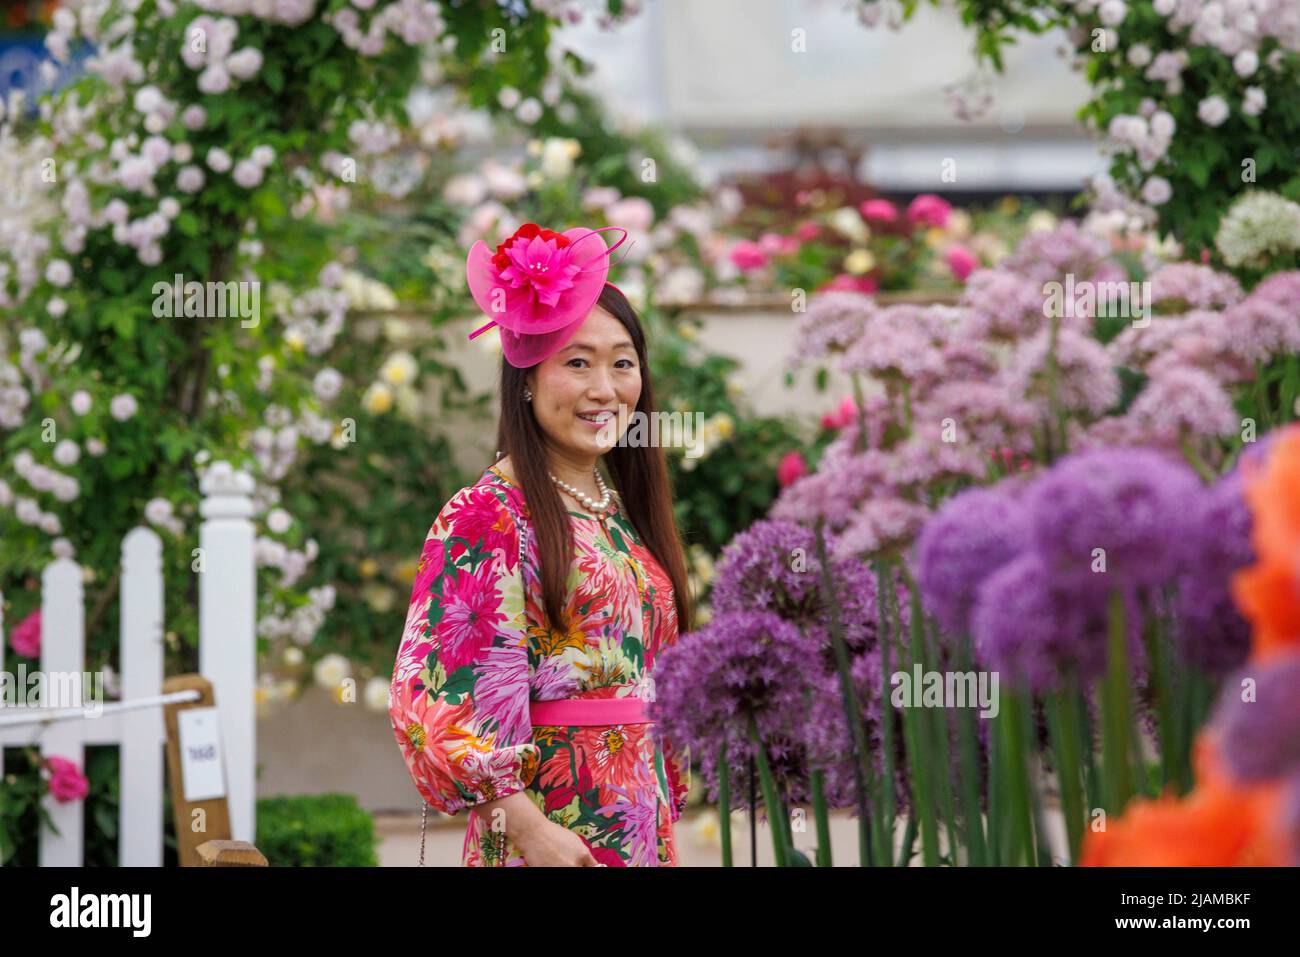 Una signora alla moda con un cappello rosa visita il RHS Chelsea Flower Show, tra gli Aliums e le rose. Foto Stock